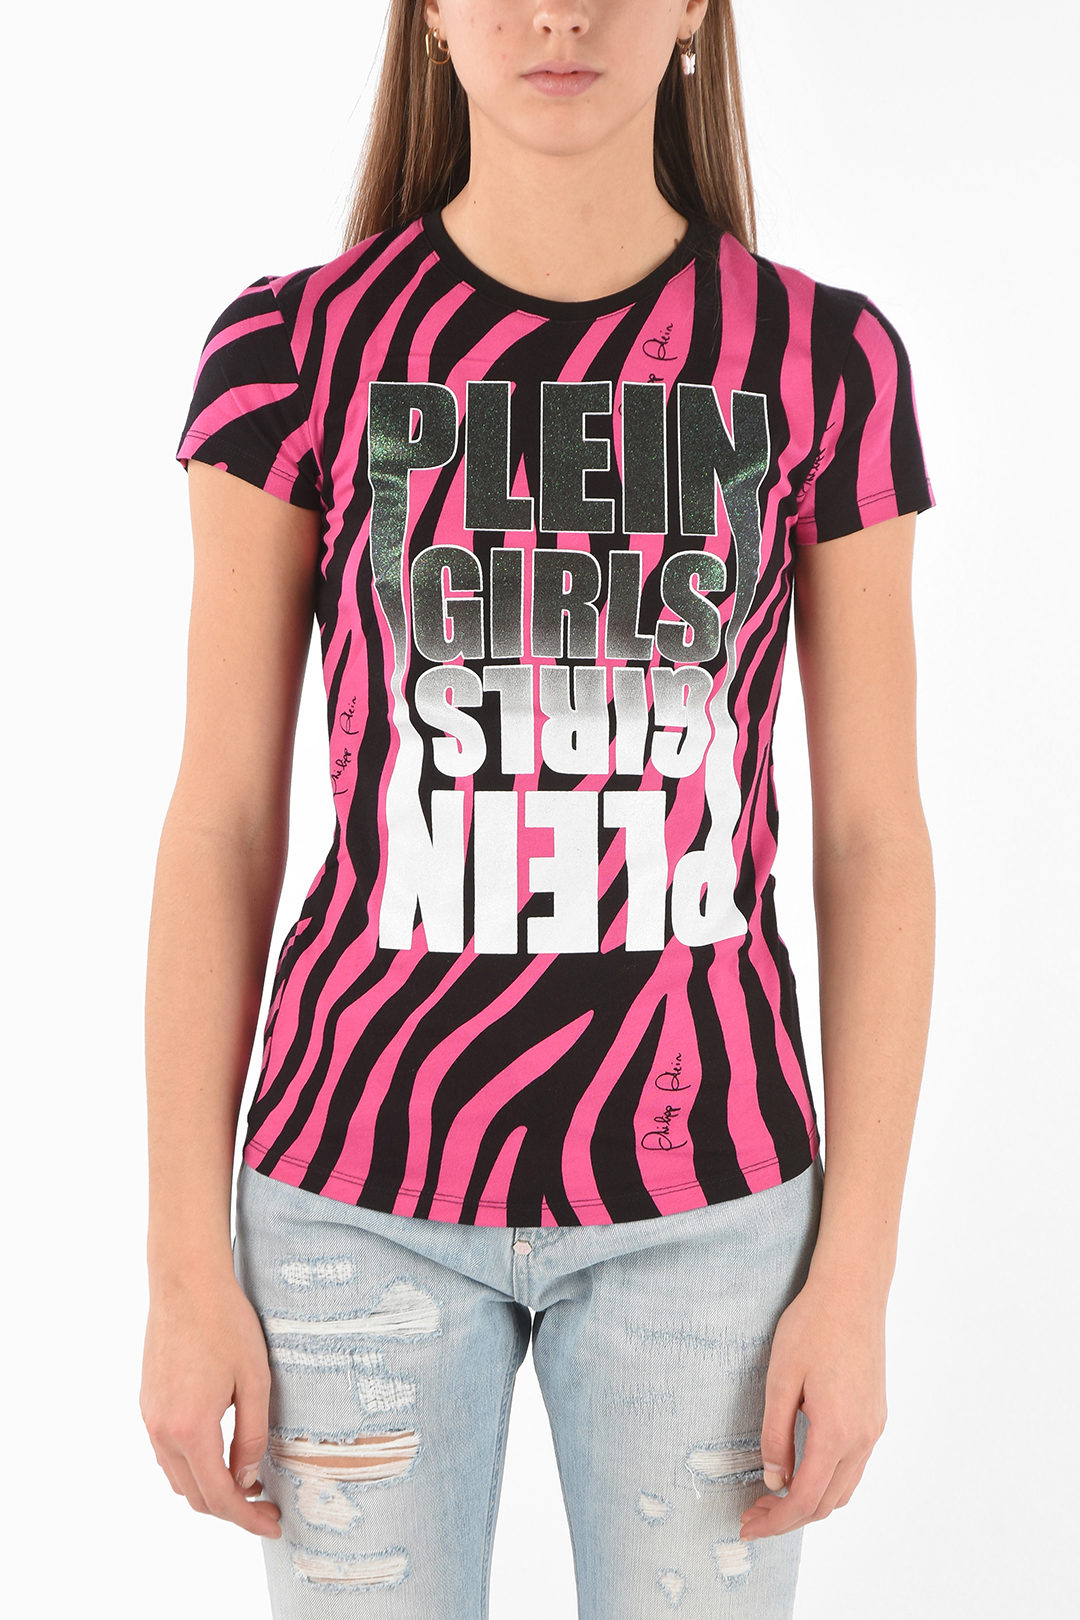 Vertrappen dood verwijderen Philipp Plein Zebra PLEIN GIRLS T-Shirt women - Glamood Outlet